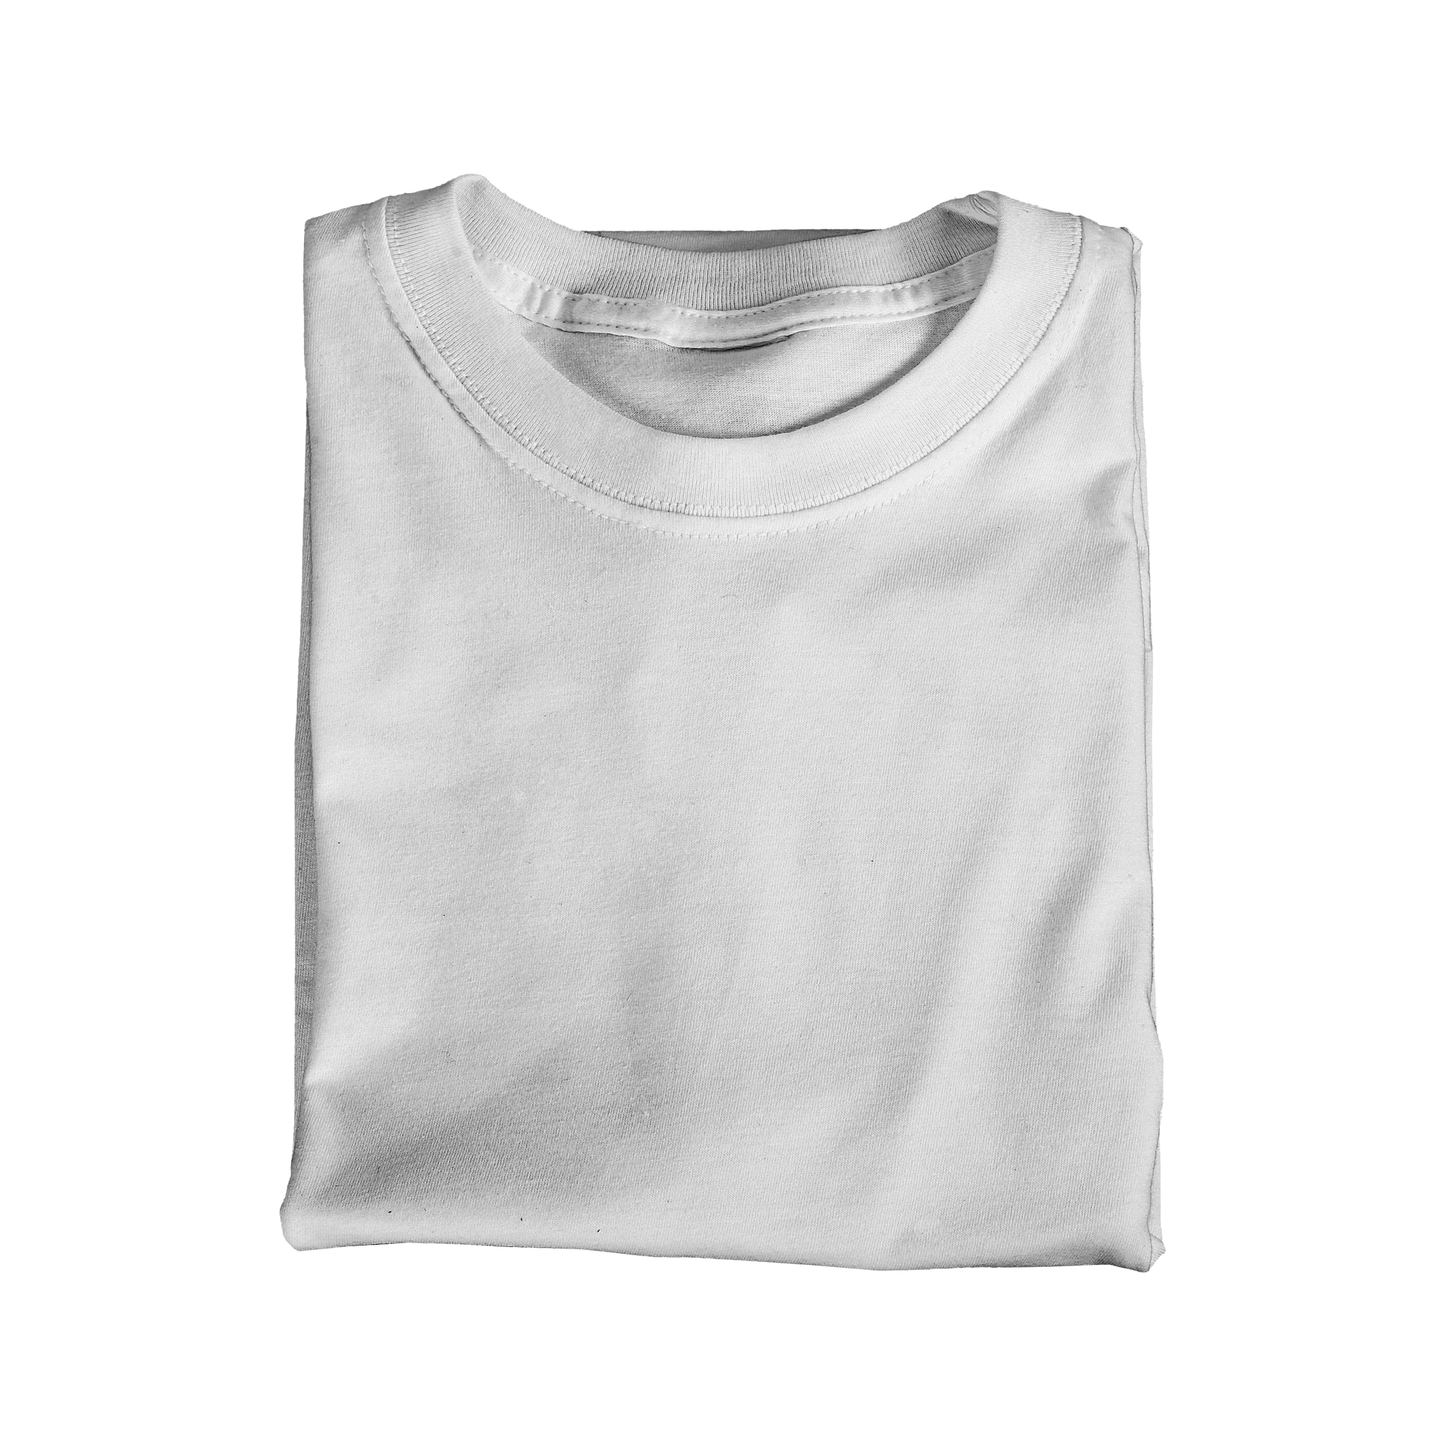 Folded Crewneck T-Shirt Mockup (Adobe Photoshop)